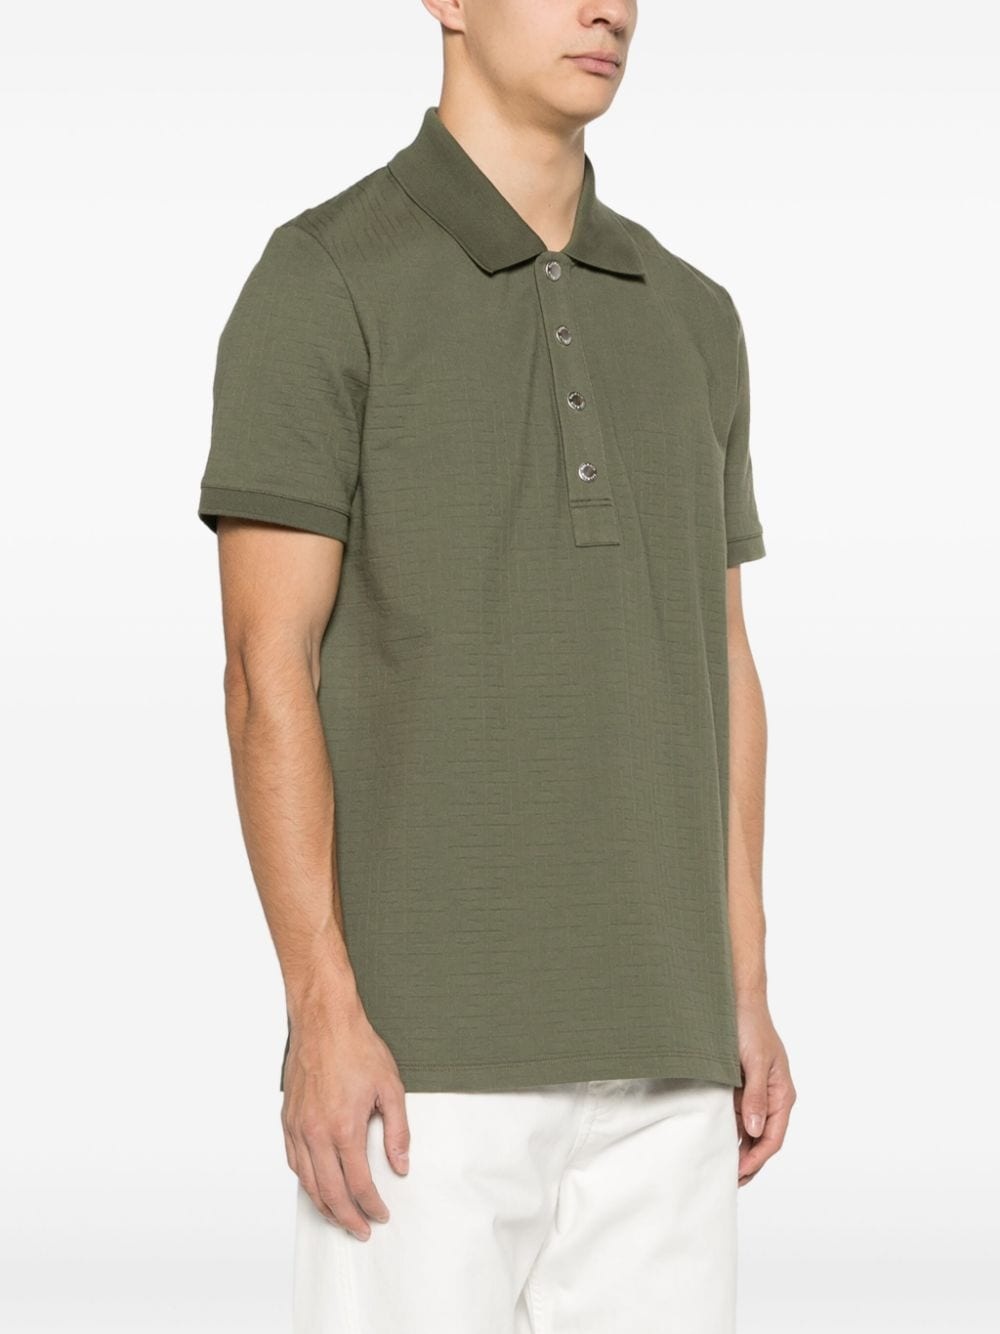 jacquard cotton polo shirt - 3